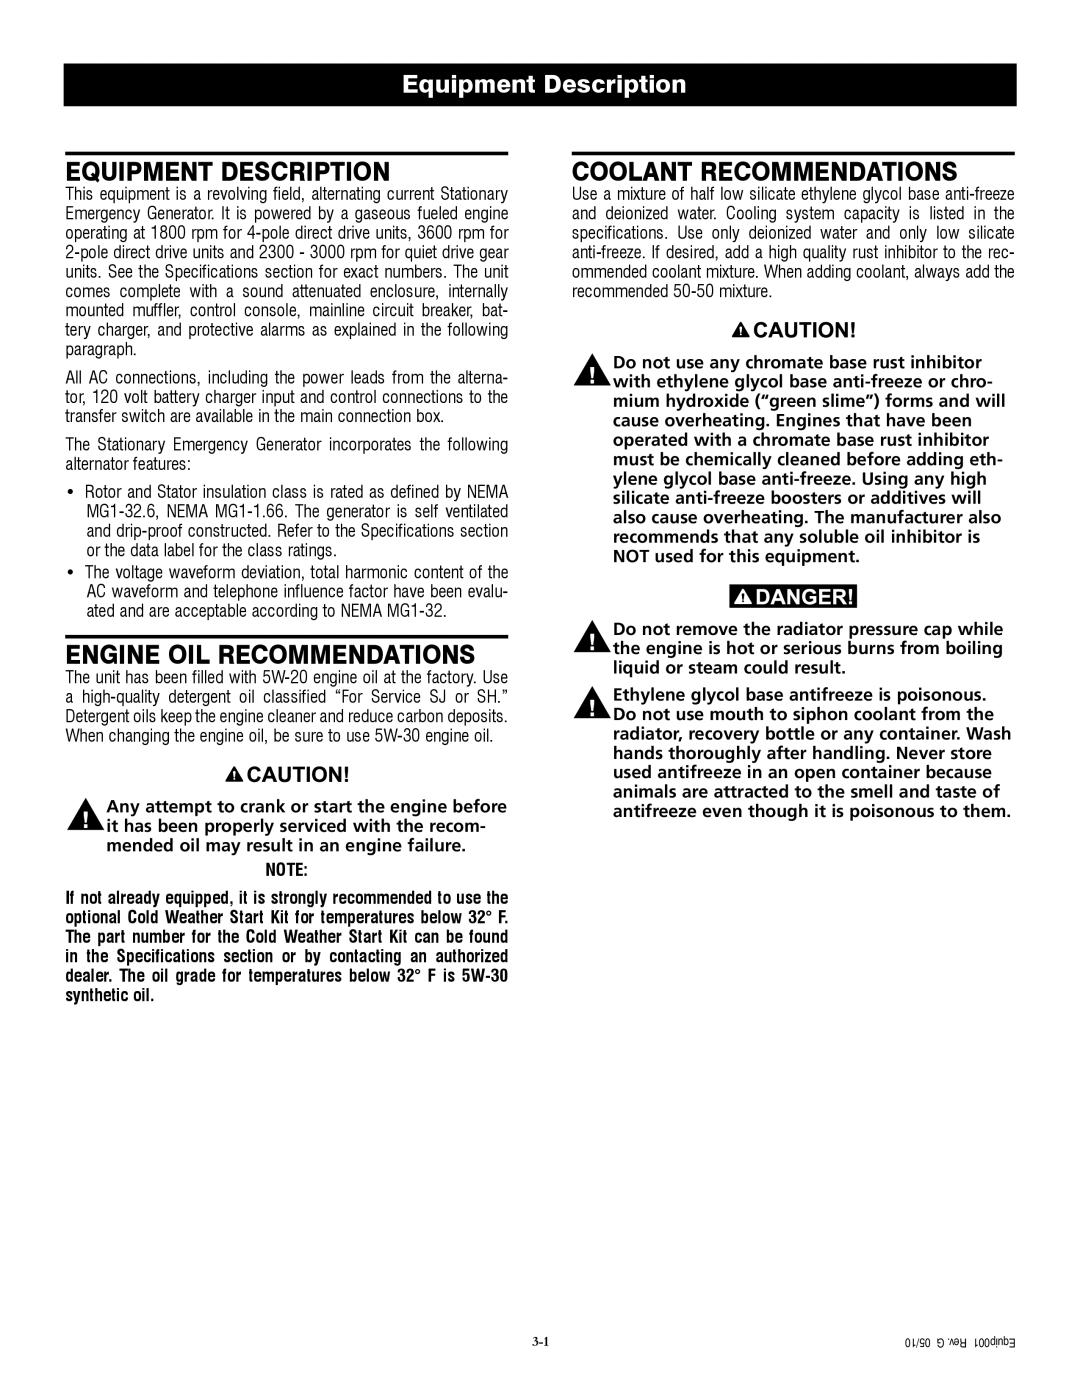 Generac QT04524ANSX owner manual Equipment Description, Engine Oil Recommendations, Coolant Recommendations 